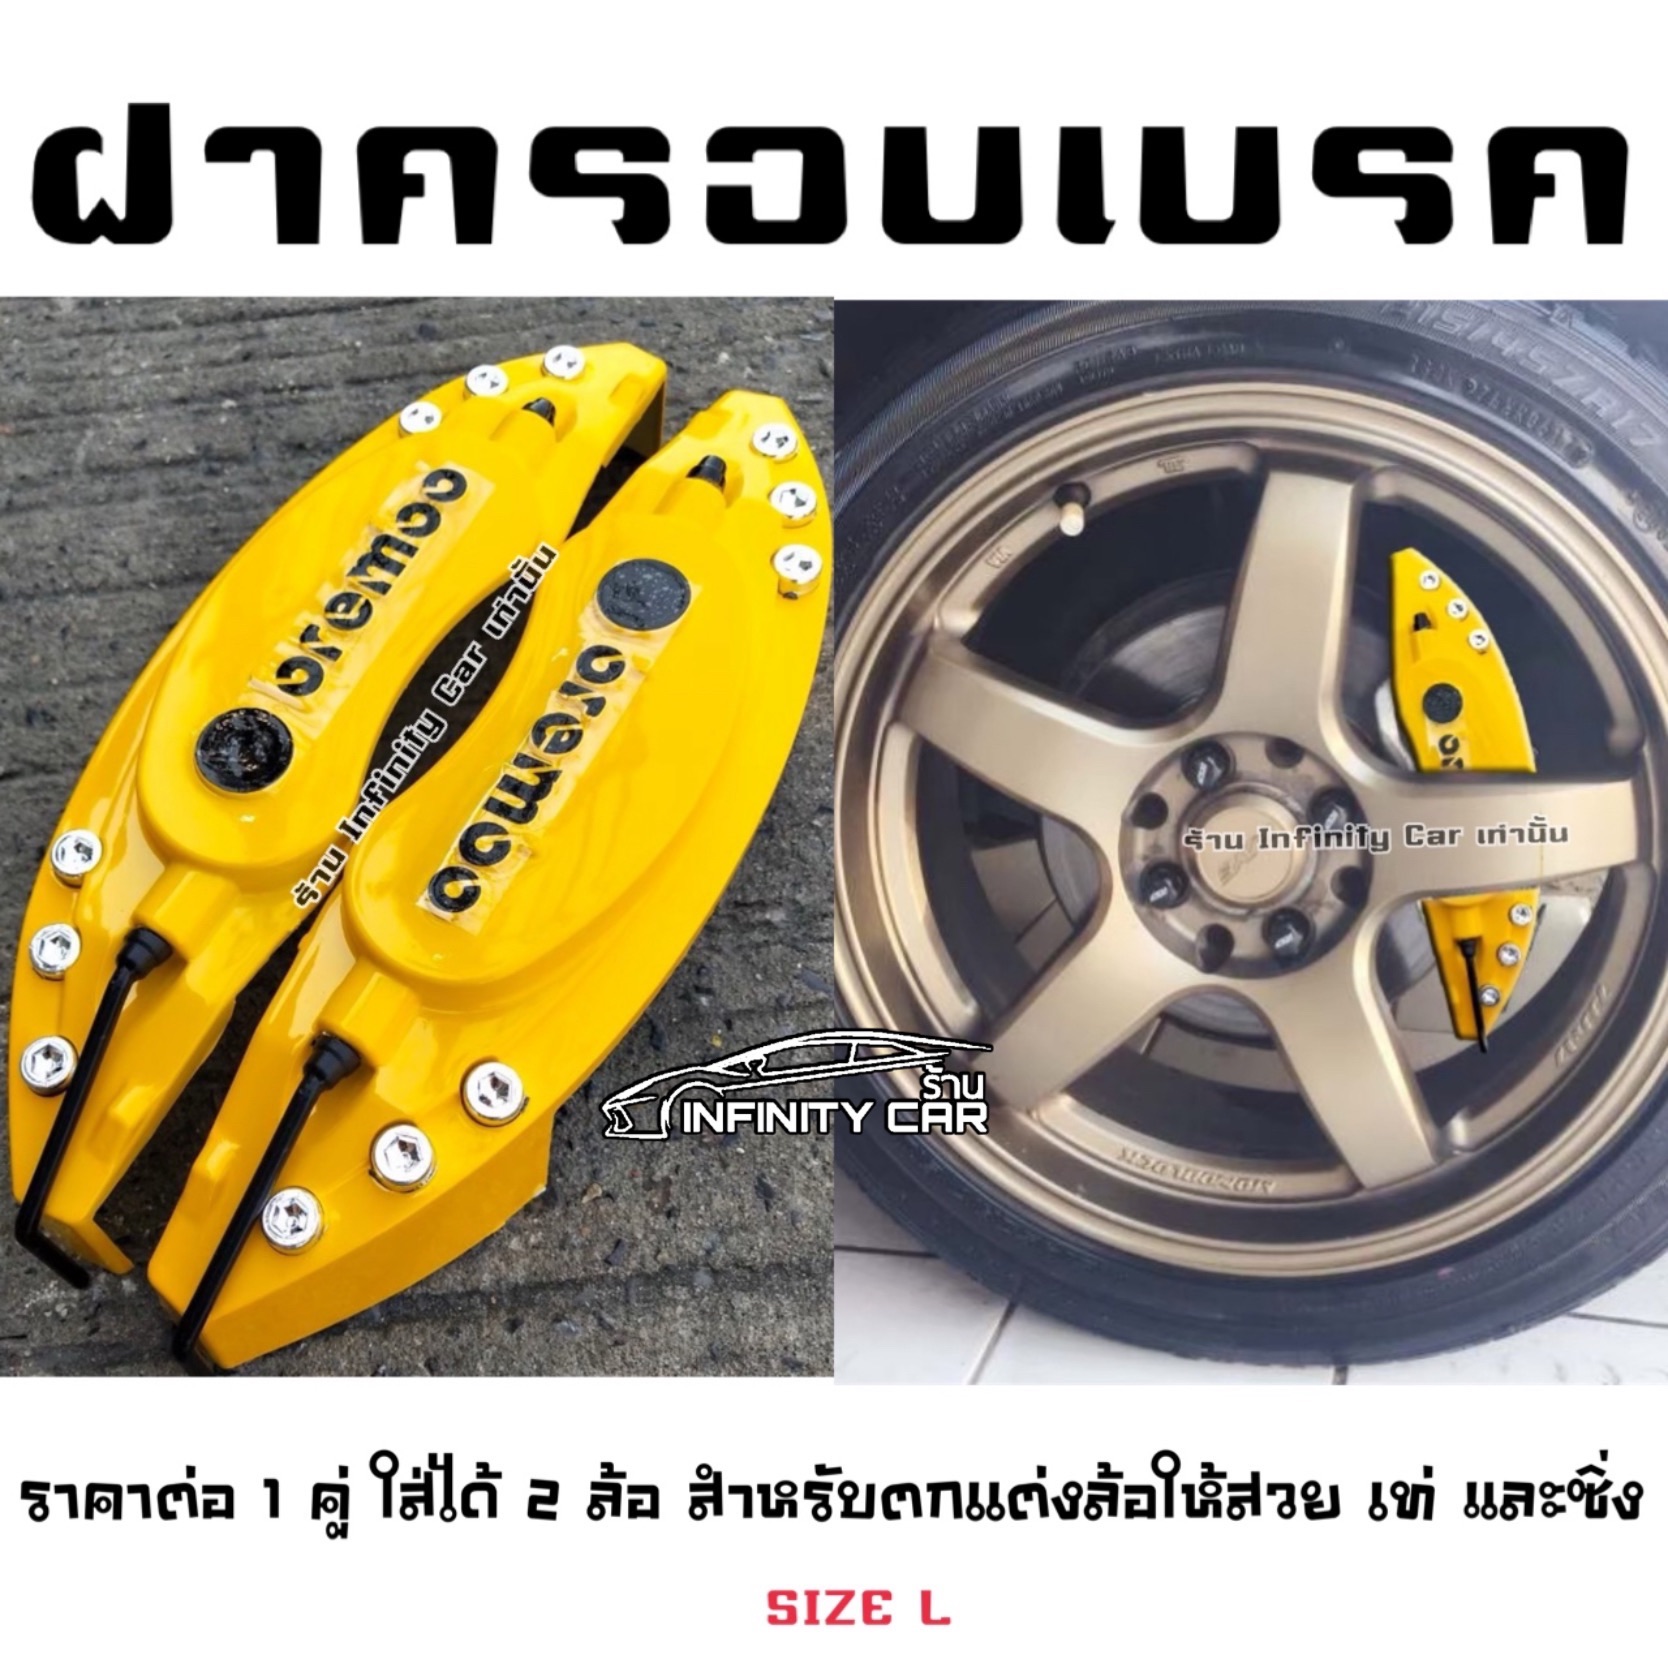 Size (L) สีเหลือง ครอบตกแต่งดิสเบรคด้านหน้ารถ สำหรับ รถกระบะ รถยกสูง รถยนต์ทุกรุ่น